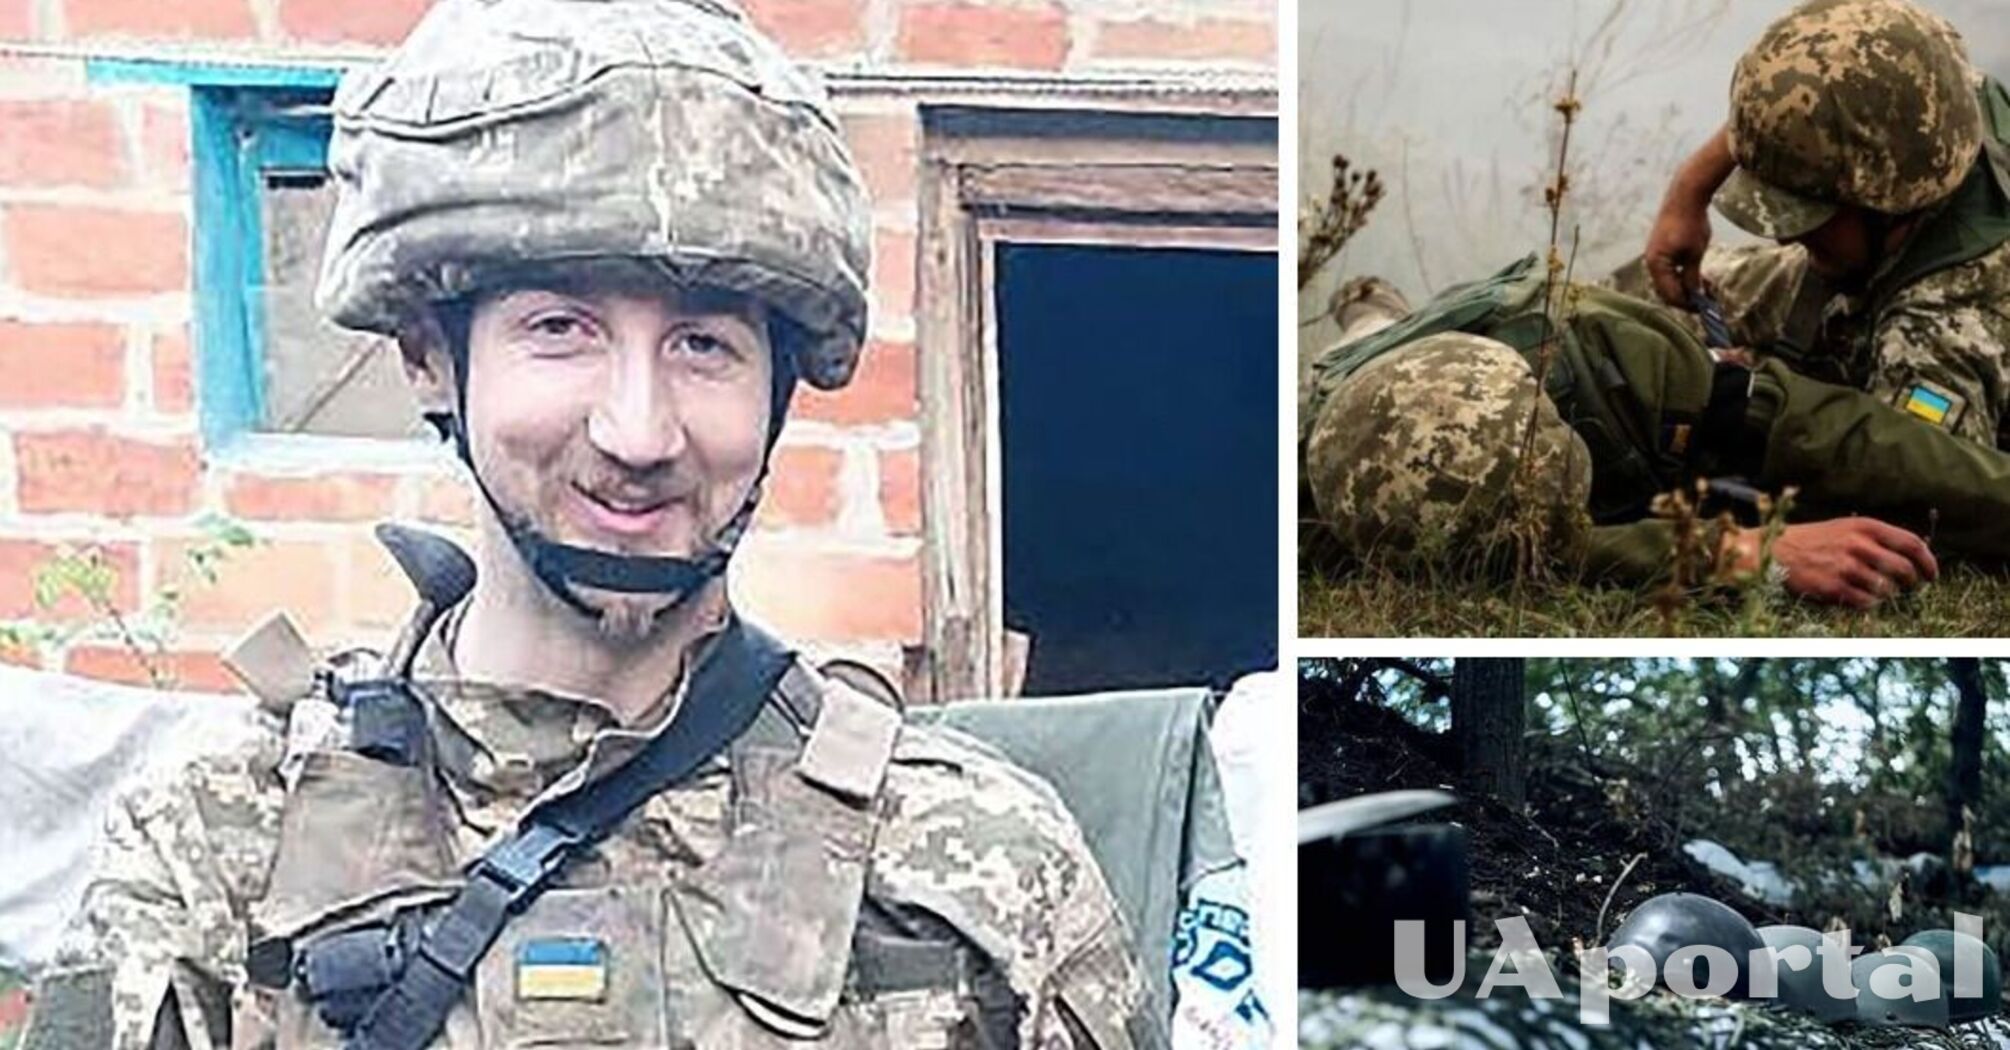 Ірландець з Іноземного легіону загинув в боях за Україну